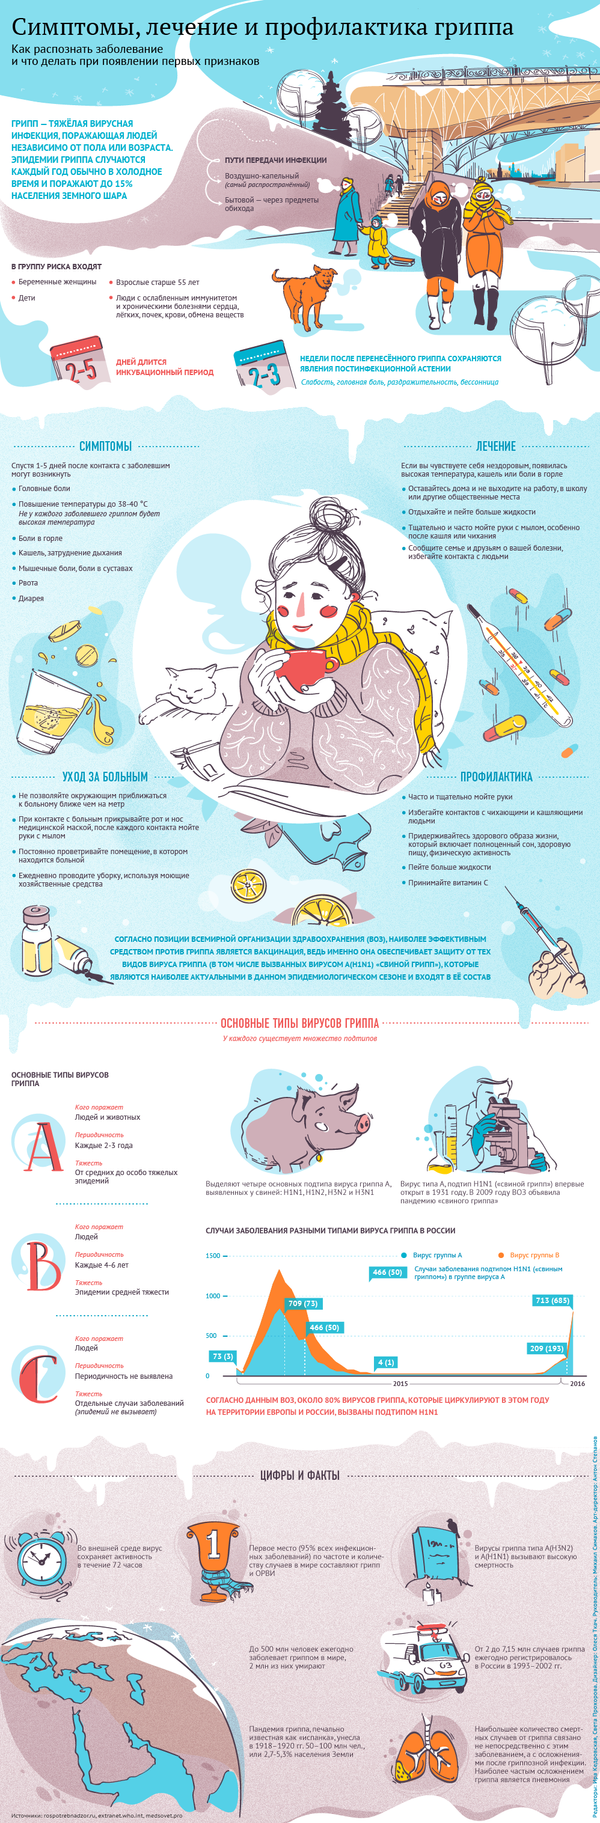 Симптомы, лечение и профилактика гриппа - Sputnik Латвия